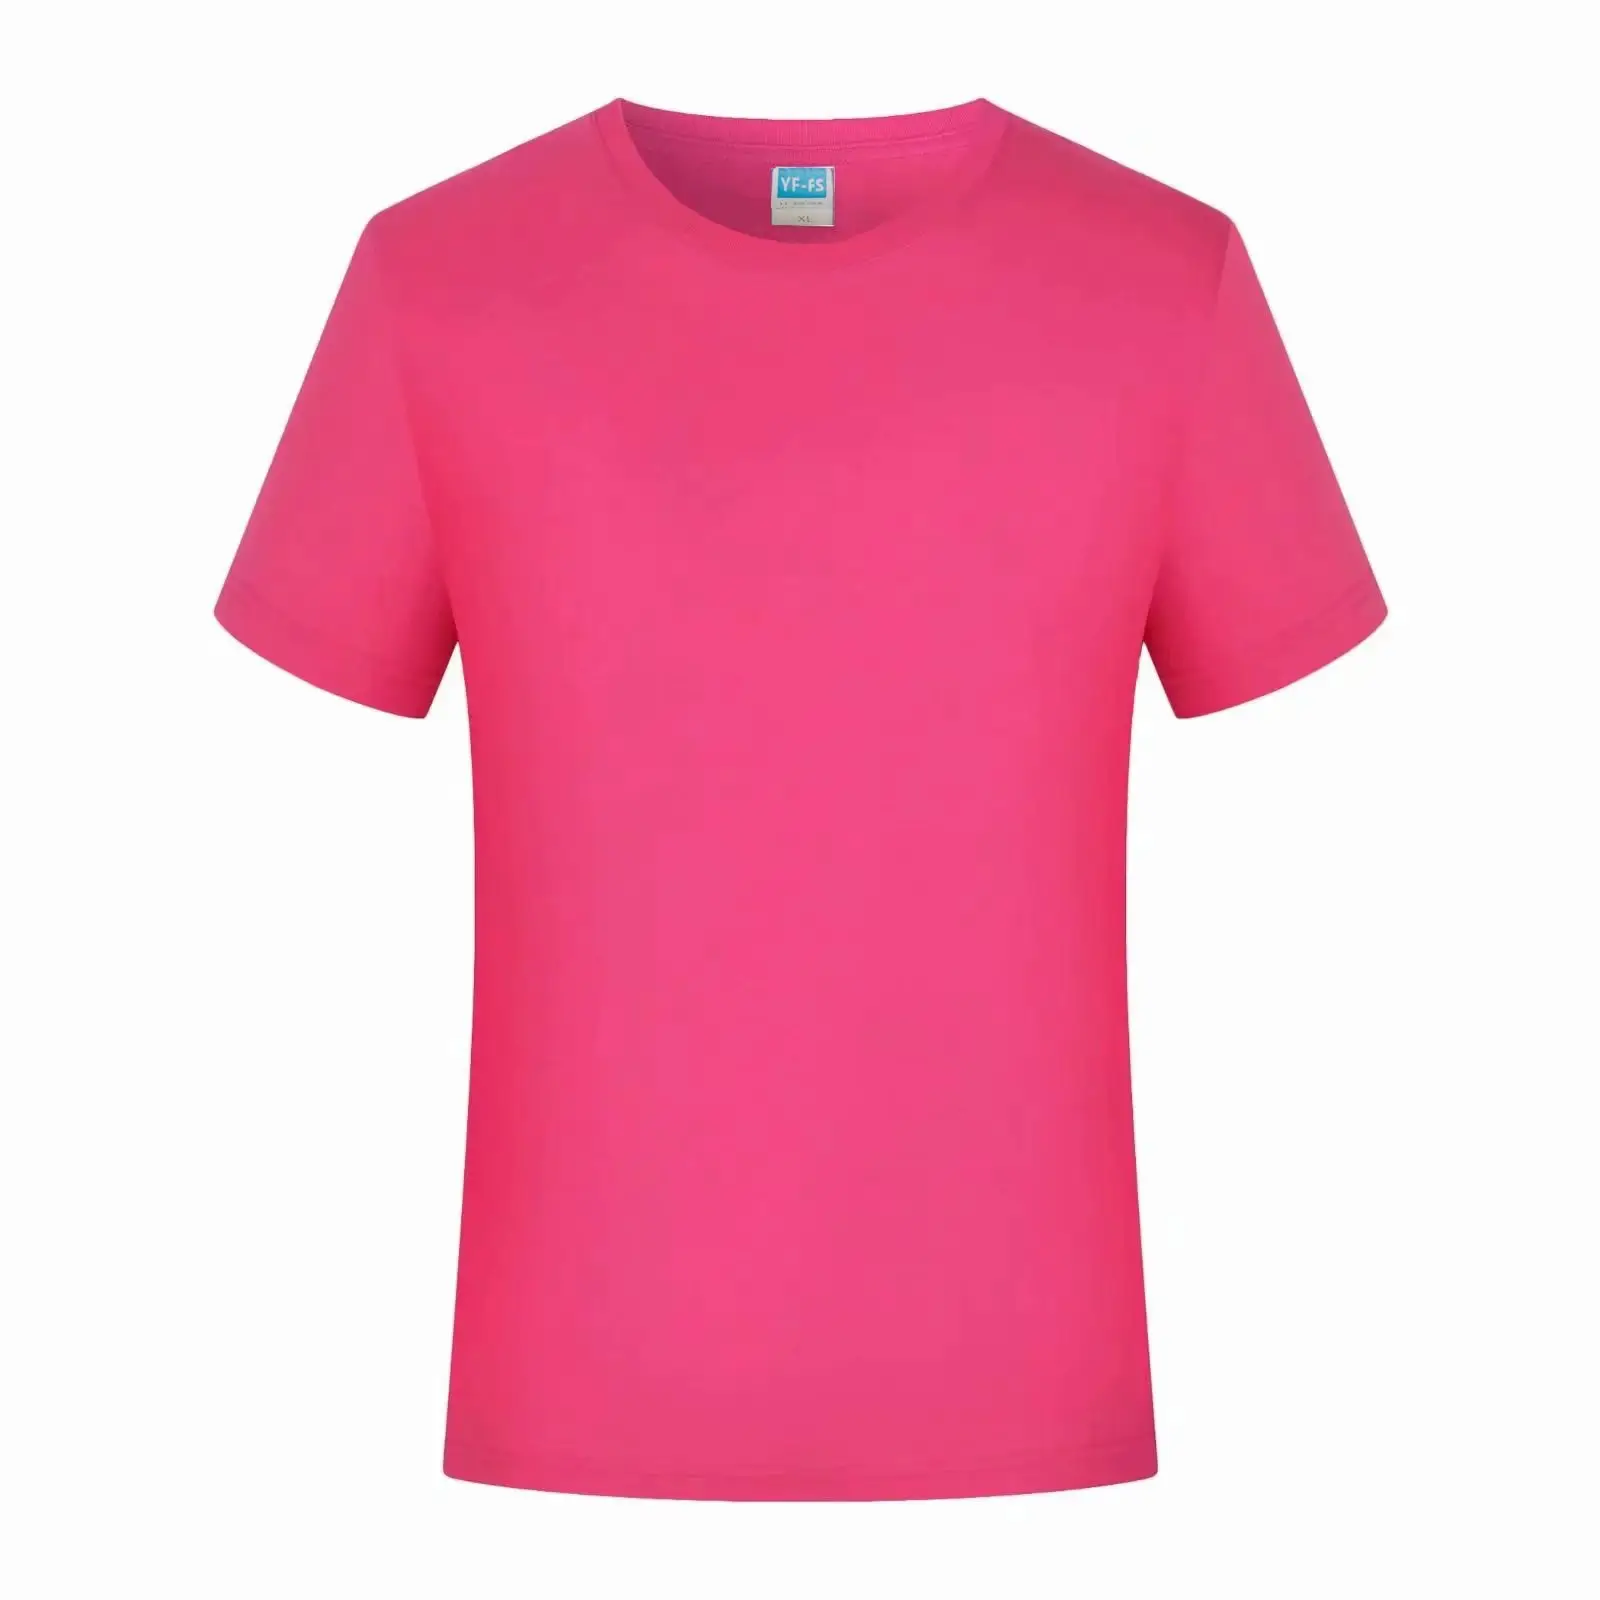 2021 جديد العلامة التجارية الملابس اللياقة البدنية تشغيل تي شيرت الرجال س الرقبة تي شيرت القطن كمال الاجسام قصان رياضية قمم رياضة الرجال T قميص